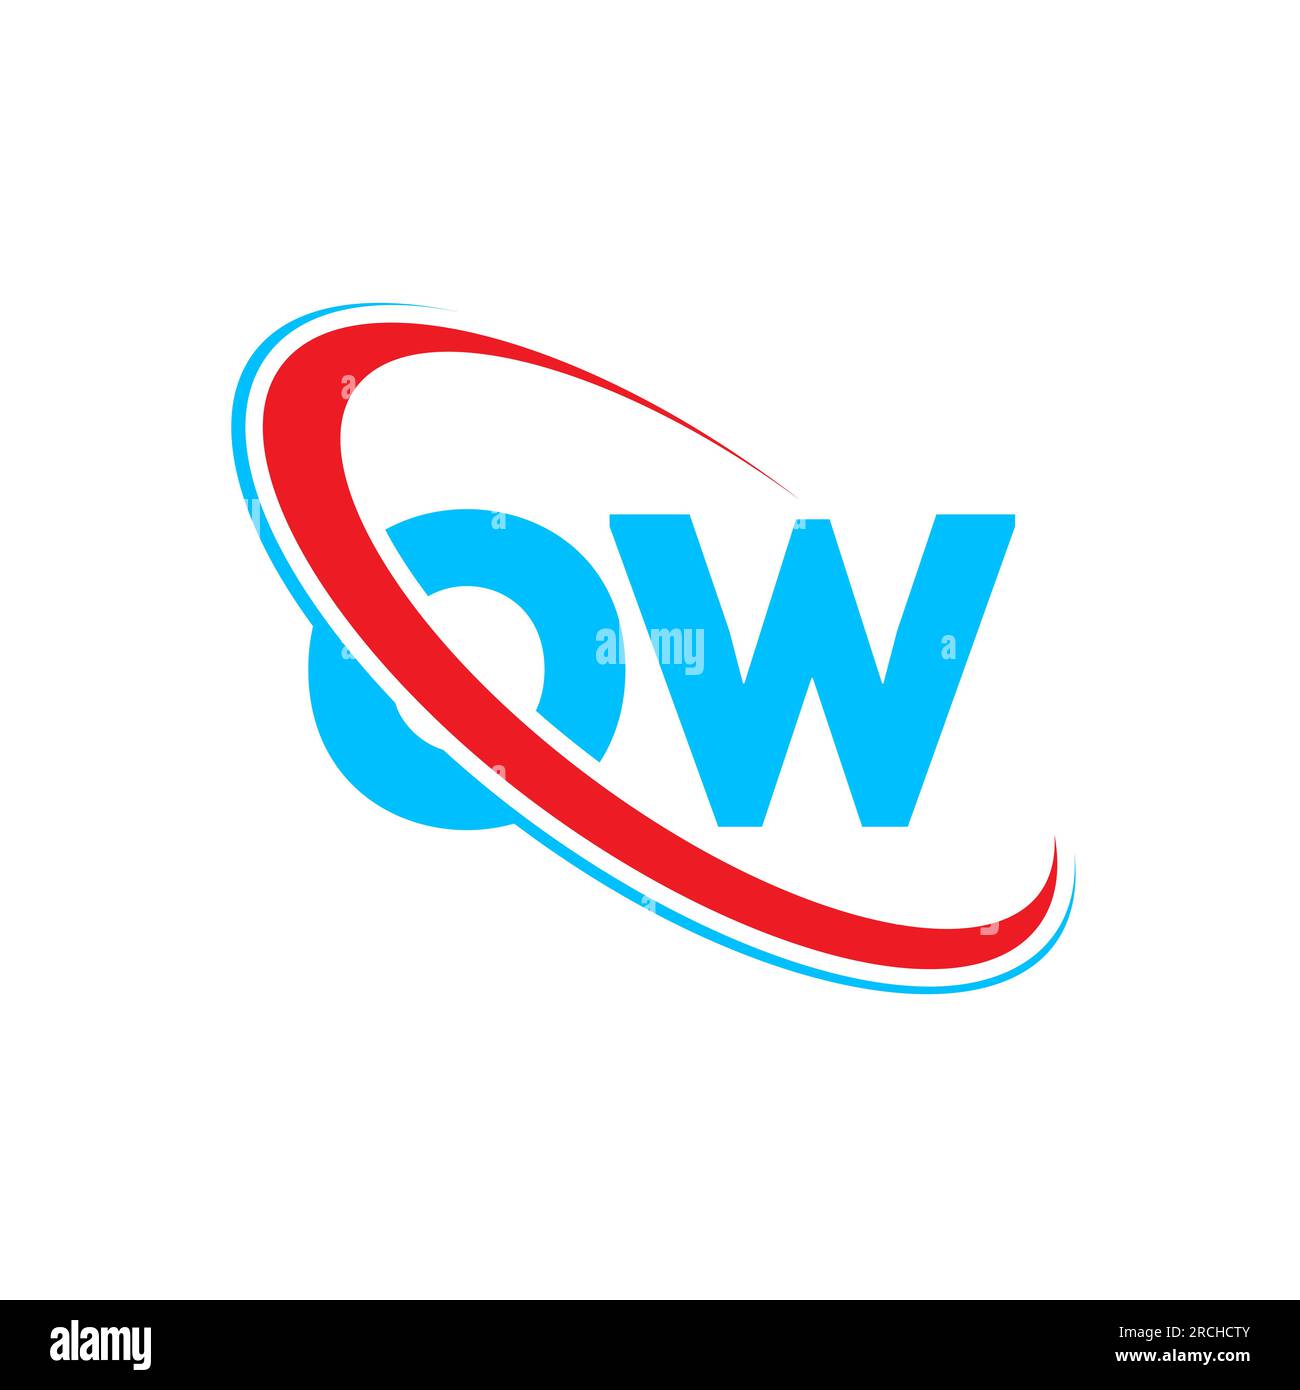 LOGO-Design MIT OW-Buchstaben. Anfangsbuchstabe OW gekoppeltes rundes Monogramm-Logo in Großbuchstaben rot und blau. OW-Logo, O W-Design Stock Vektor